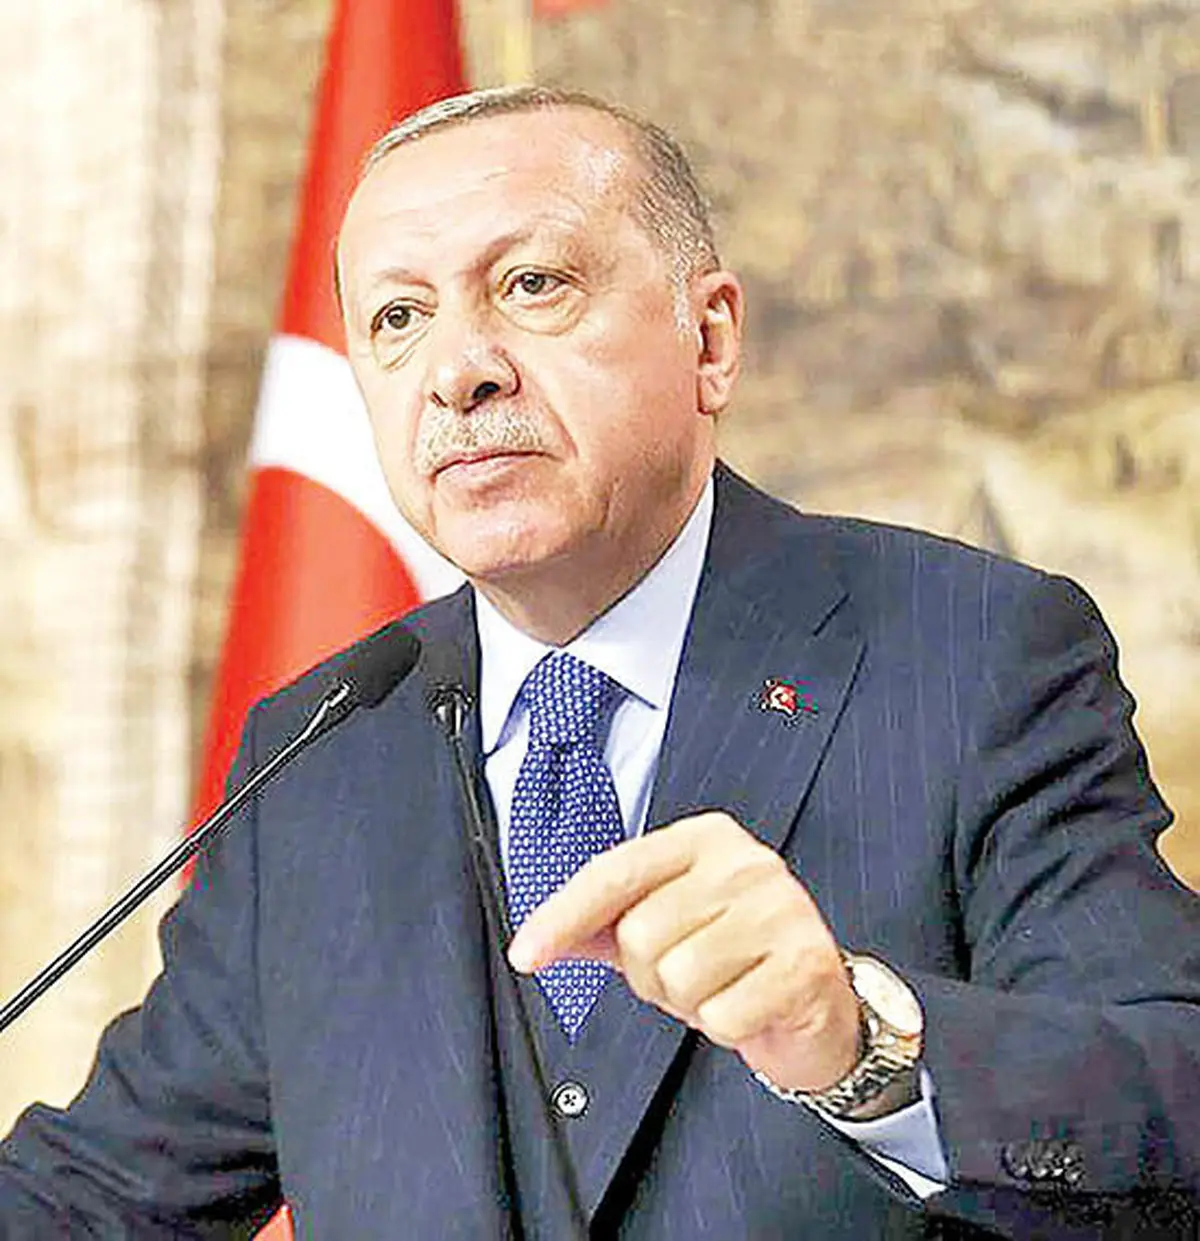  اردوغان باز هم از لیر باخت | فرجام دستکاری سیاسی نرخ بهره؛ پول ملی ترکیه به کف تاریخی خود سقوط کرد